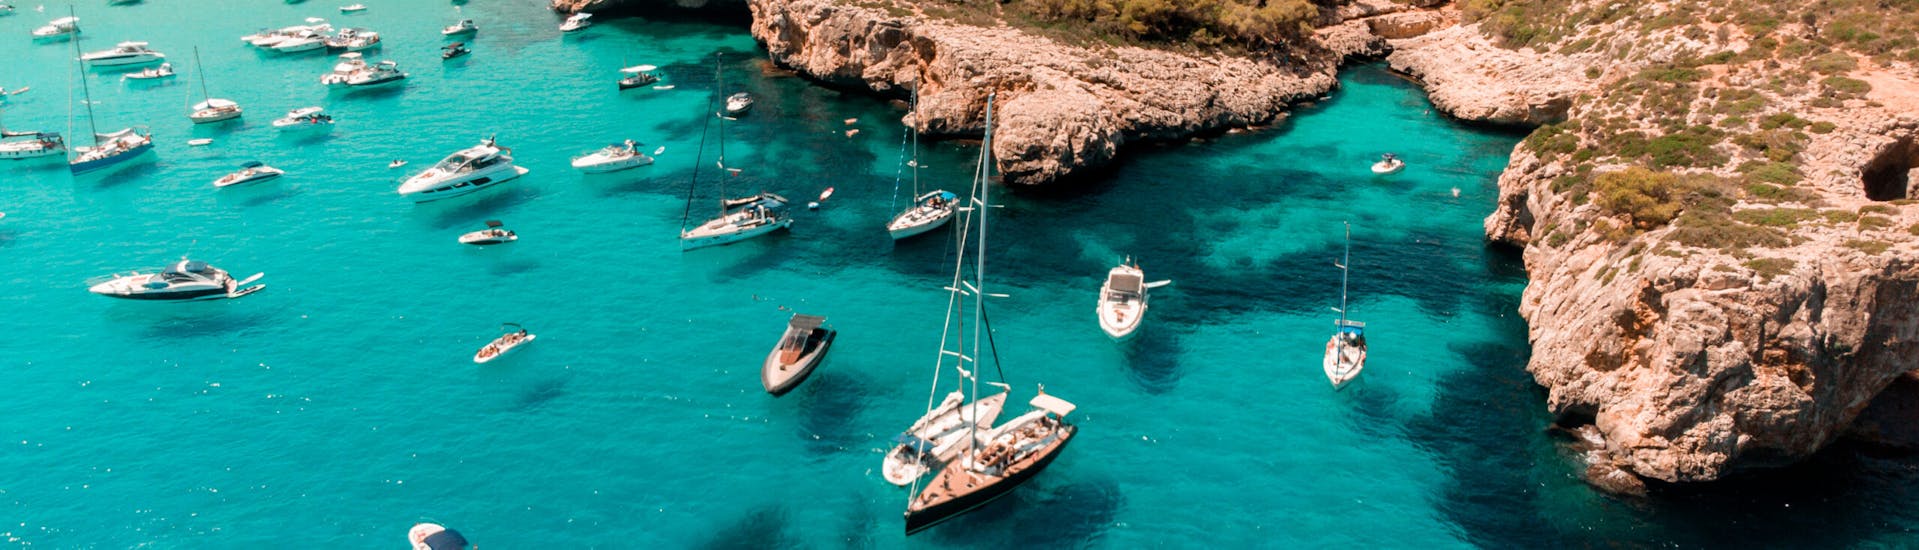 Zeilboottocht van Portocolom naar Cala Varques met zwemmen & toeristische attracties.